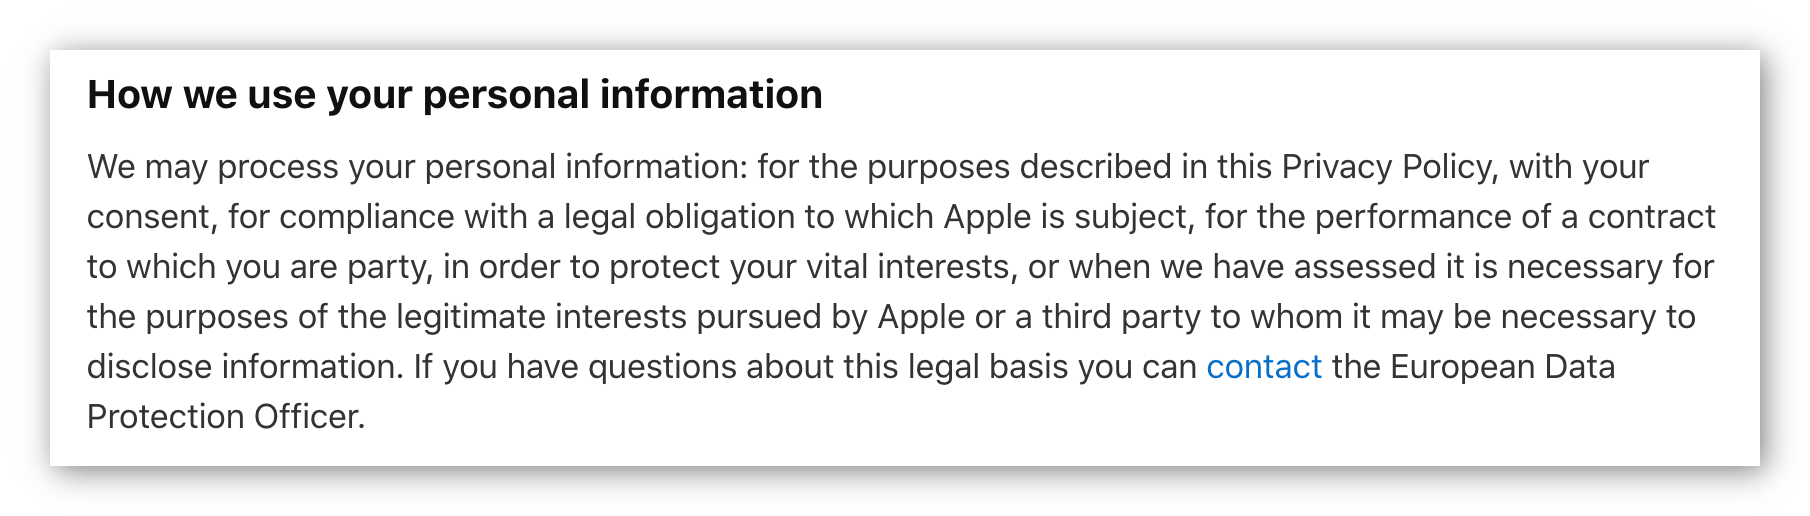 تصویر سیاست حفظ حریم خصوصی اپل